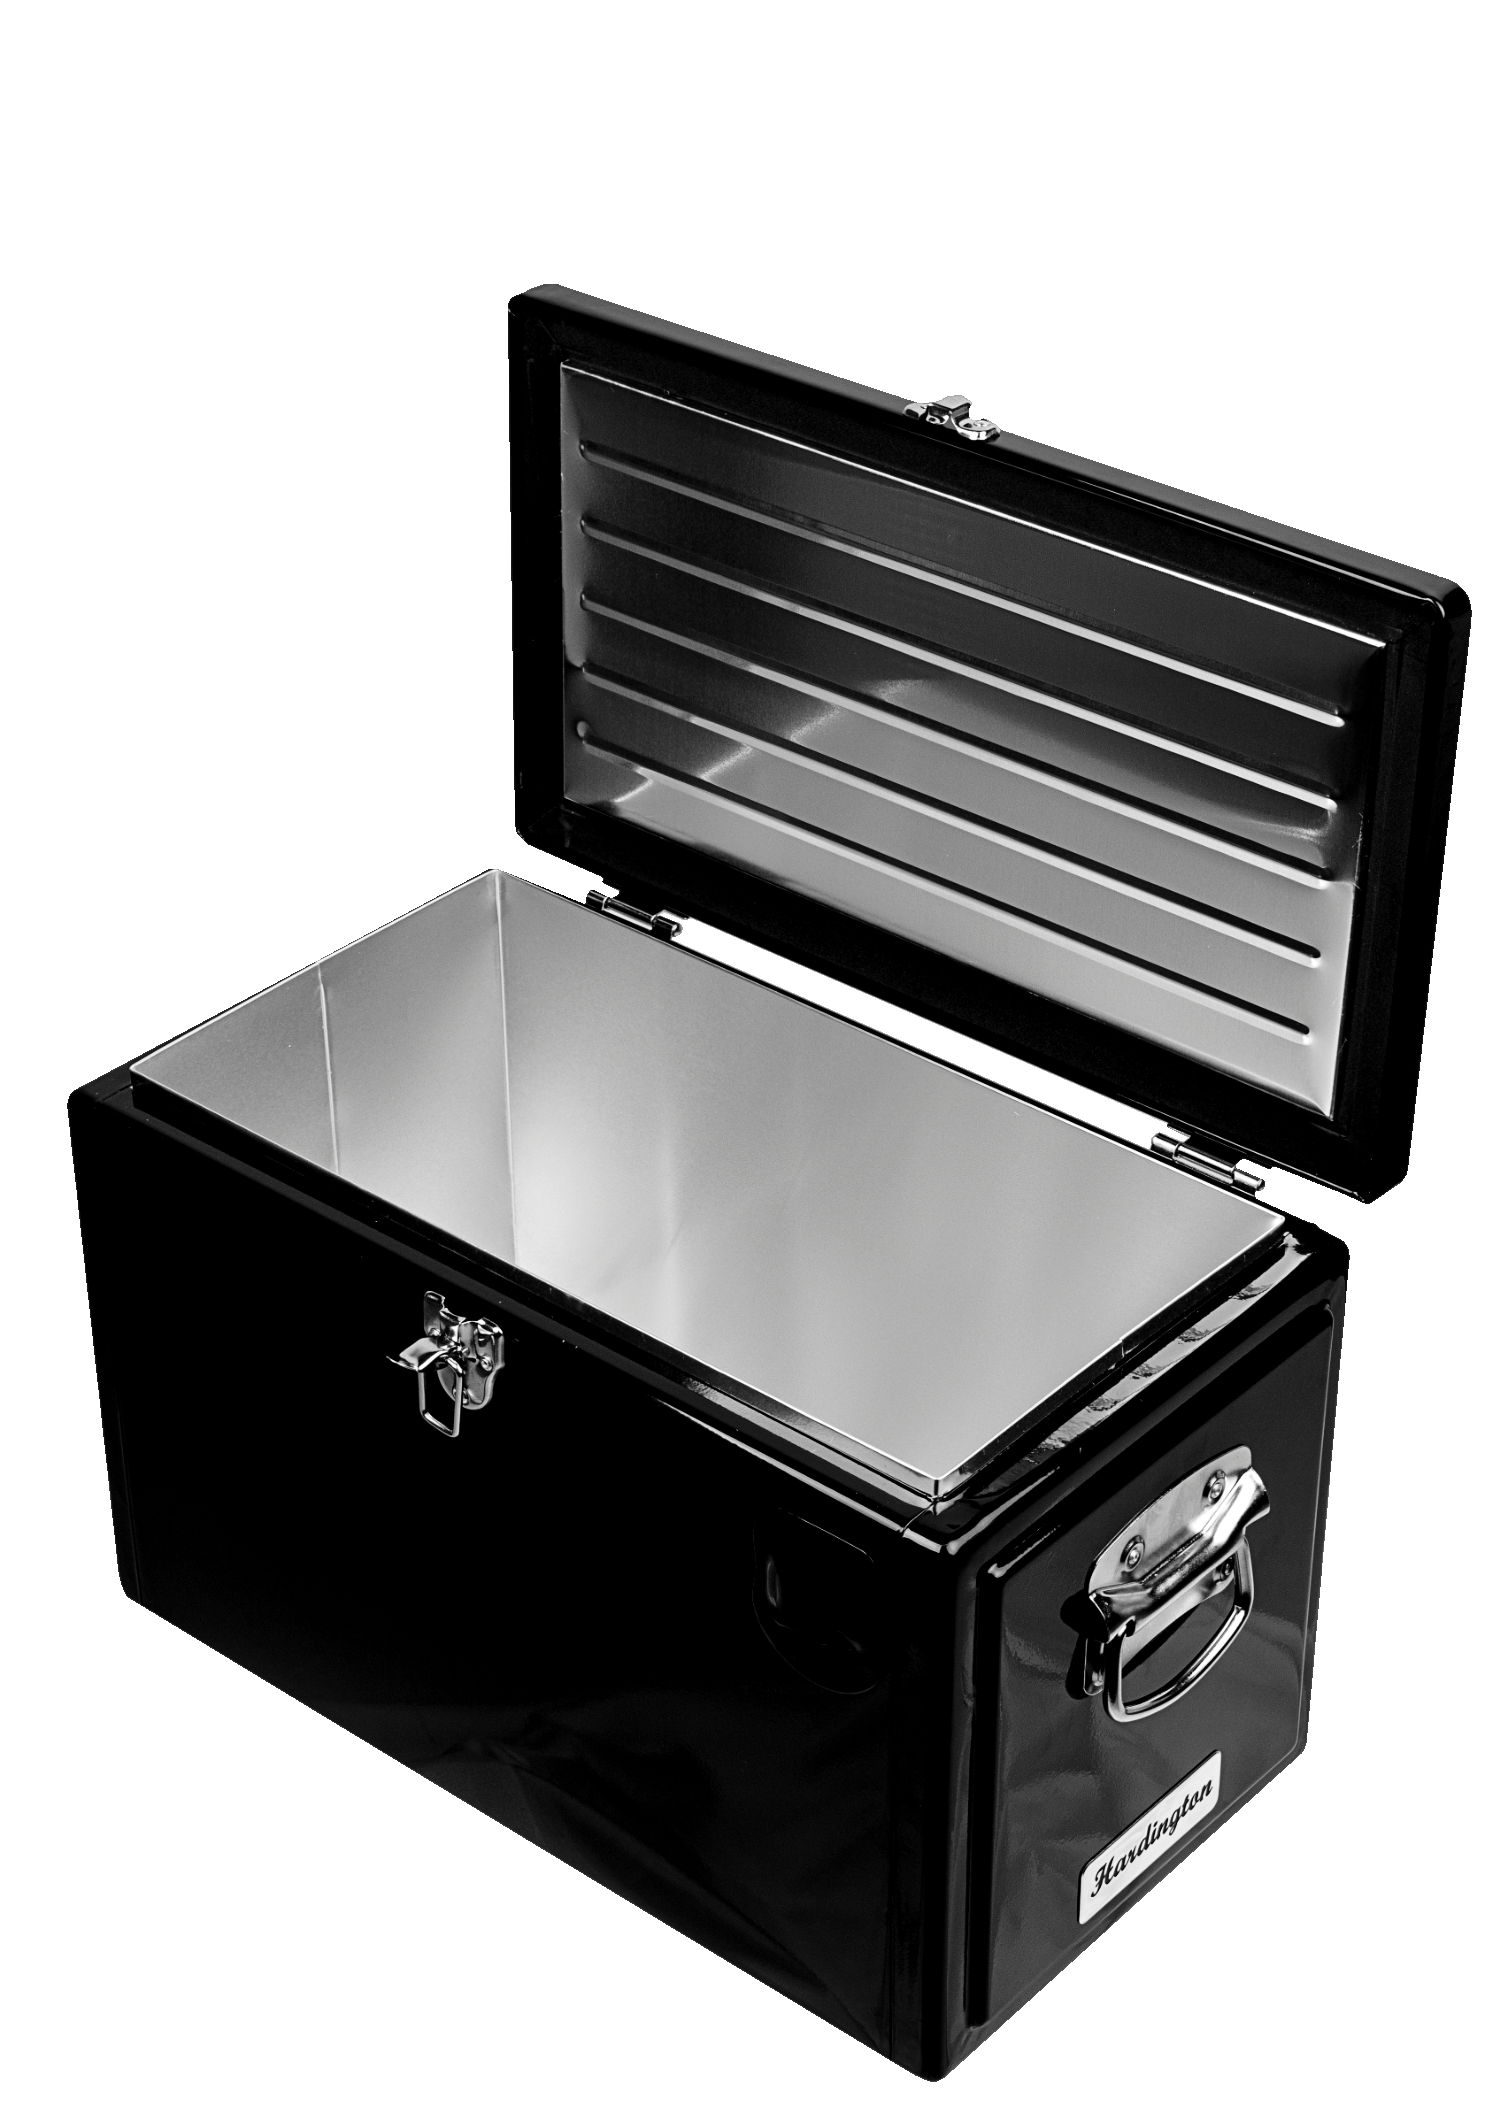 Vintage Metall-Kühlbox Retro-Style 20 Liter